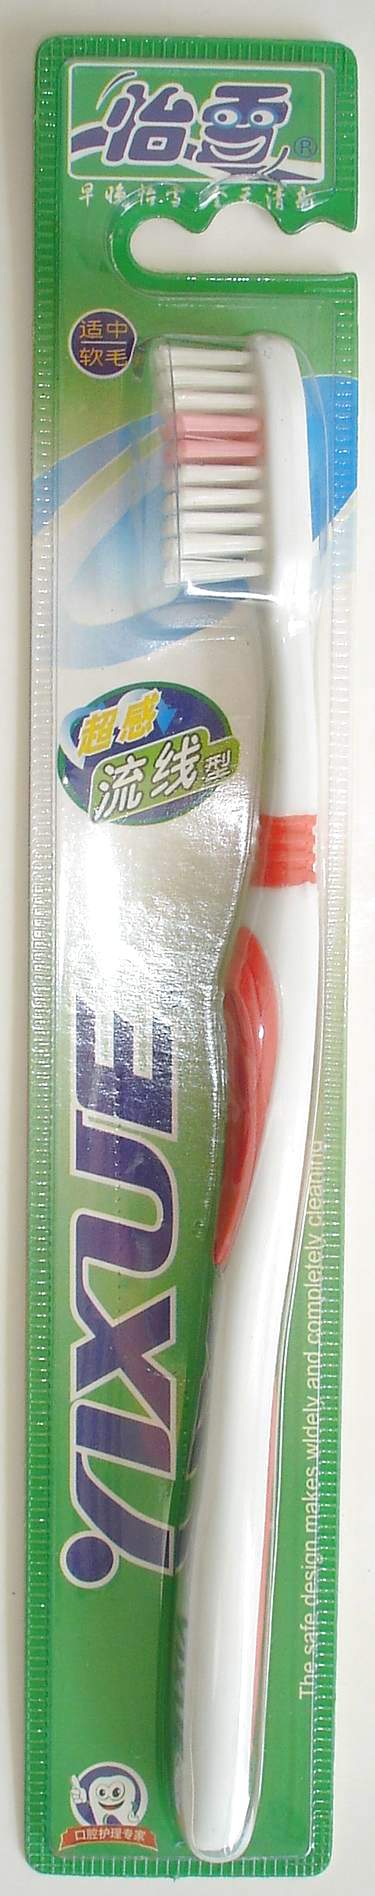 Toothbrush Manufacturer